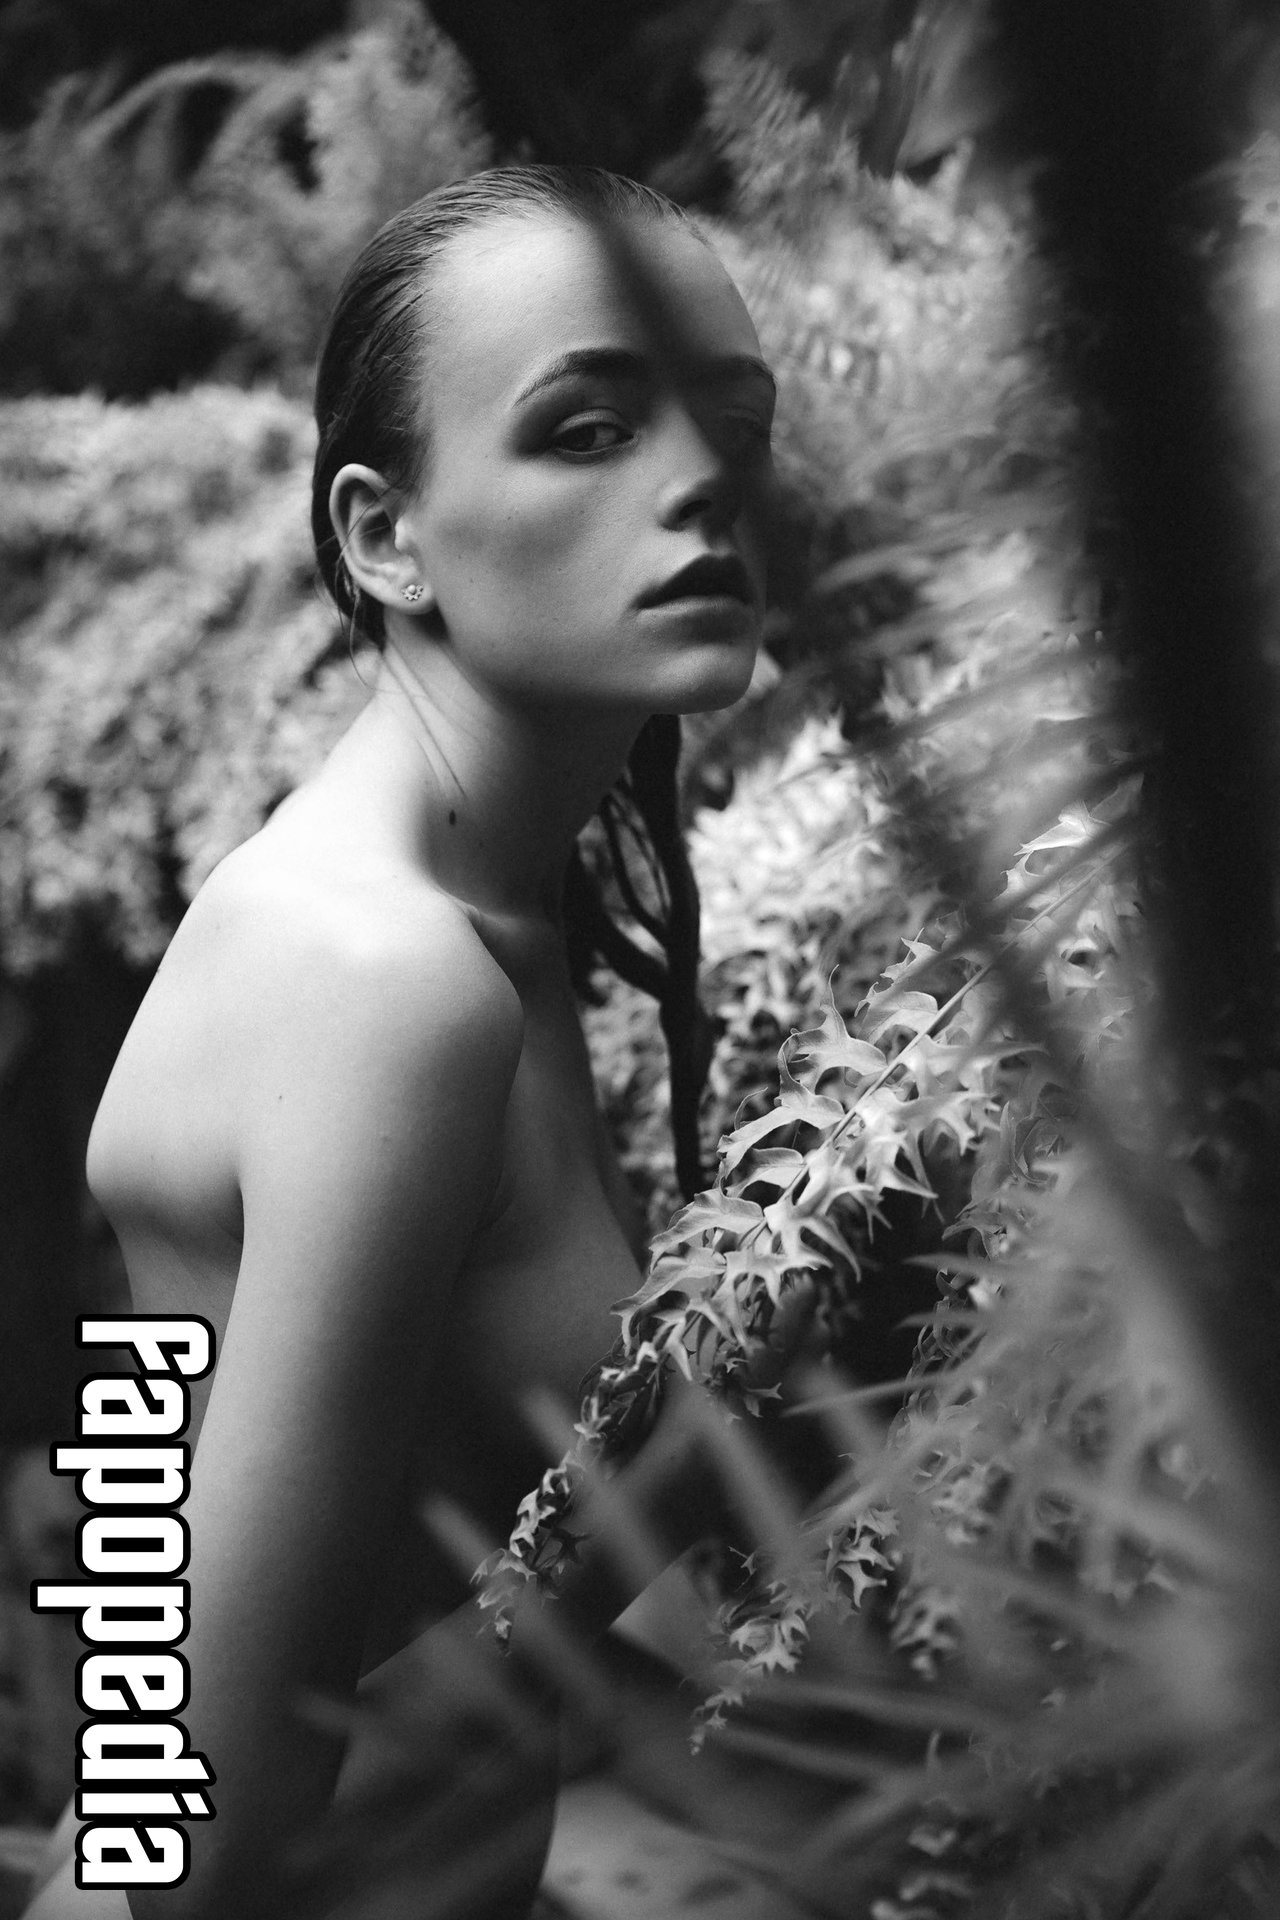 Yana wex nude - 🧡 Yana Wex Is Nude By Jorg Billwitz.